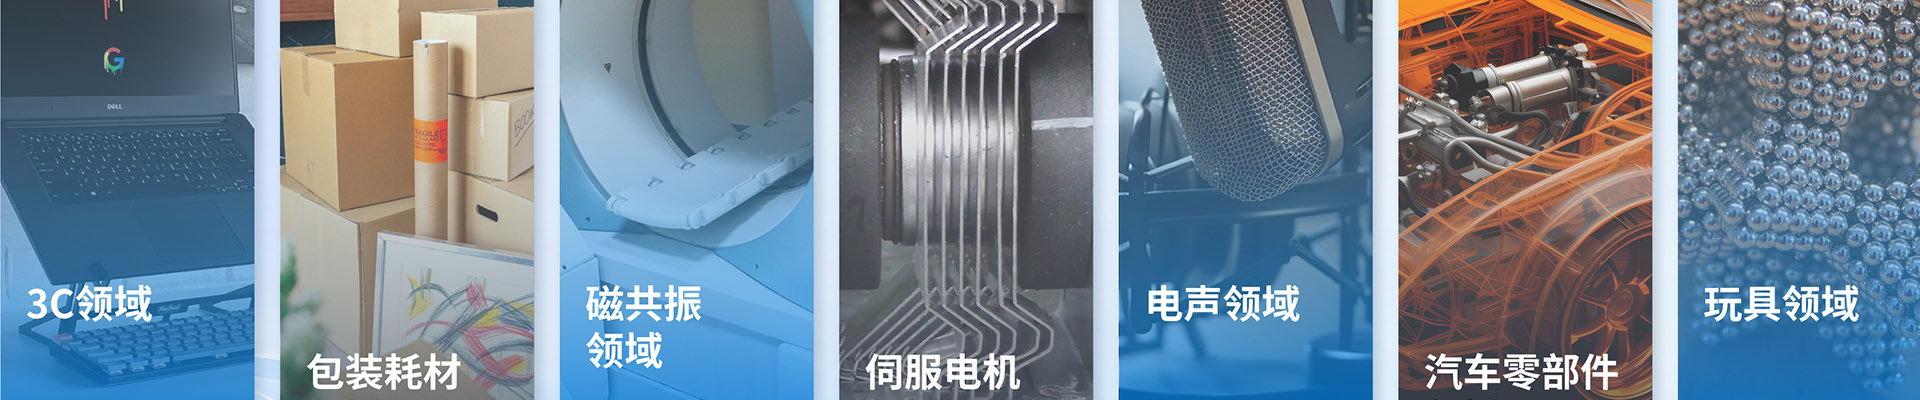 钕铁硼橡胶磁片-橡胶磁系列-宁波允亿磁业科技有限公司